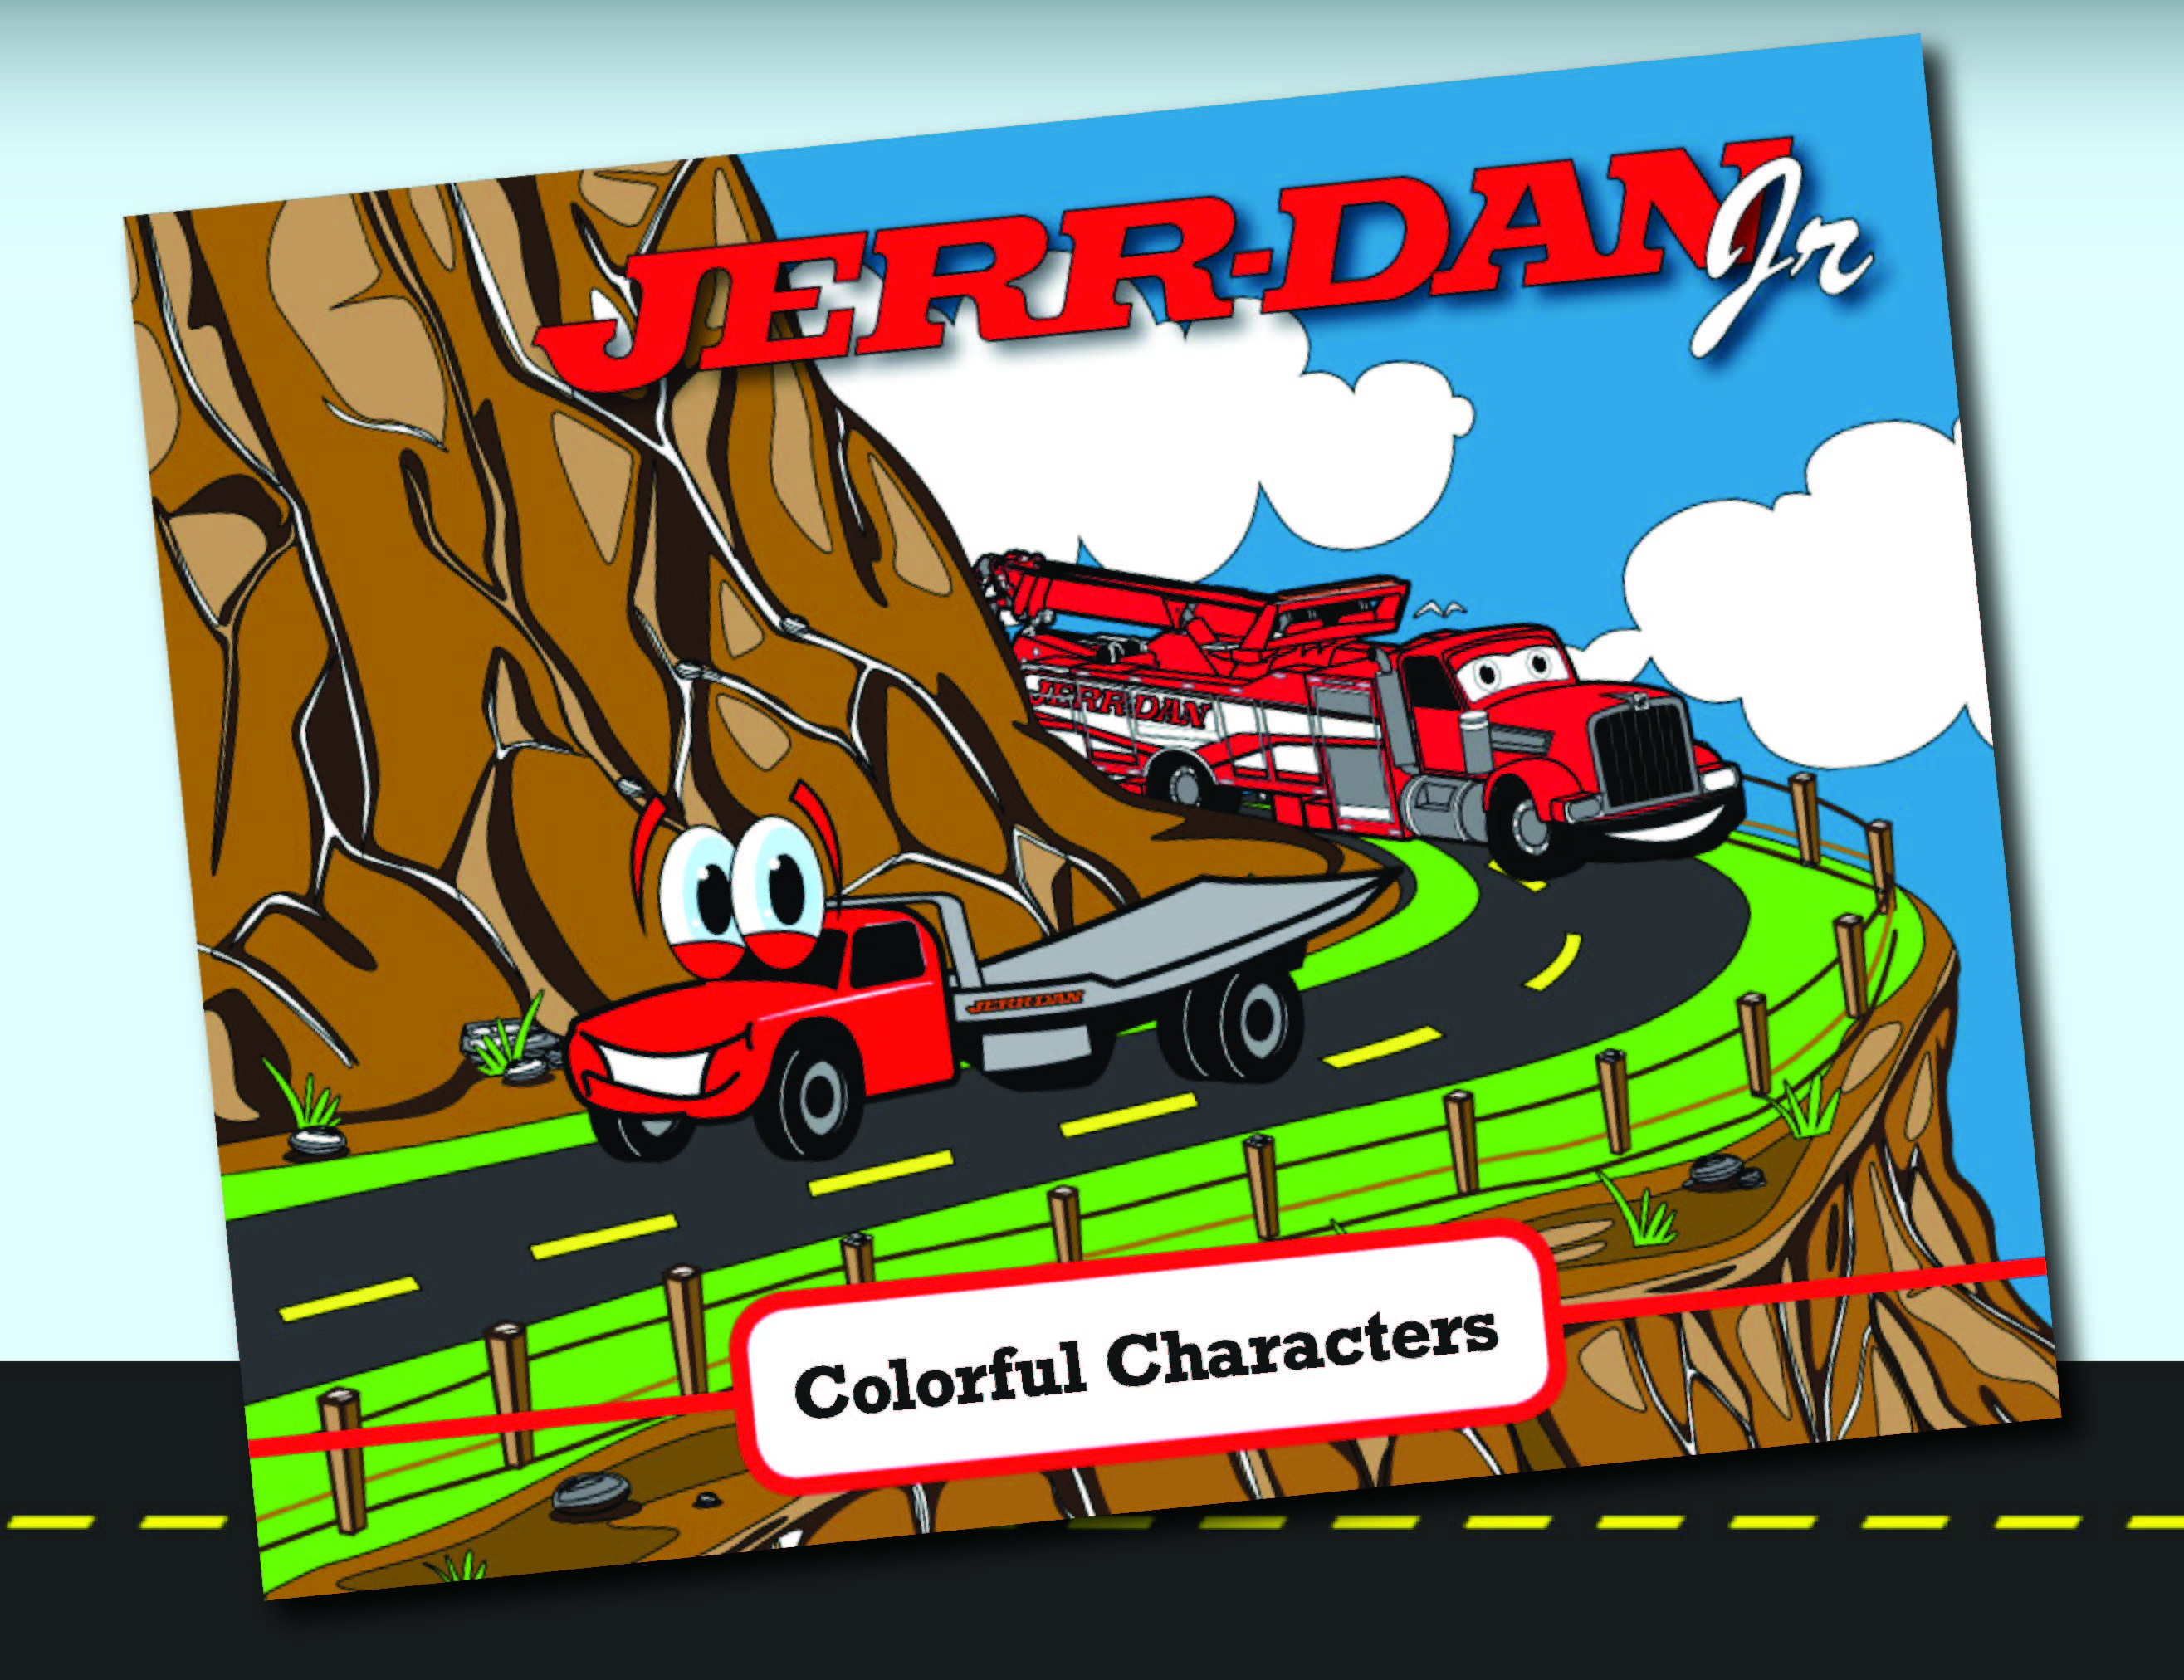 Jerr-Dan Jr Colorful Characters